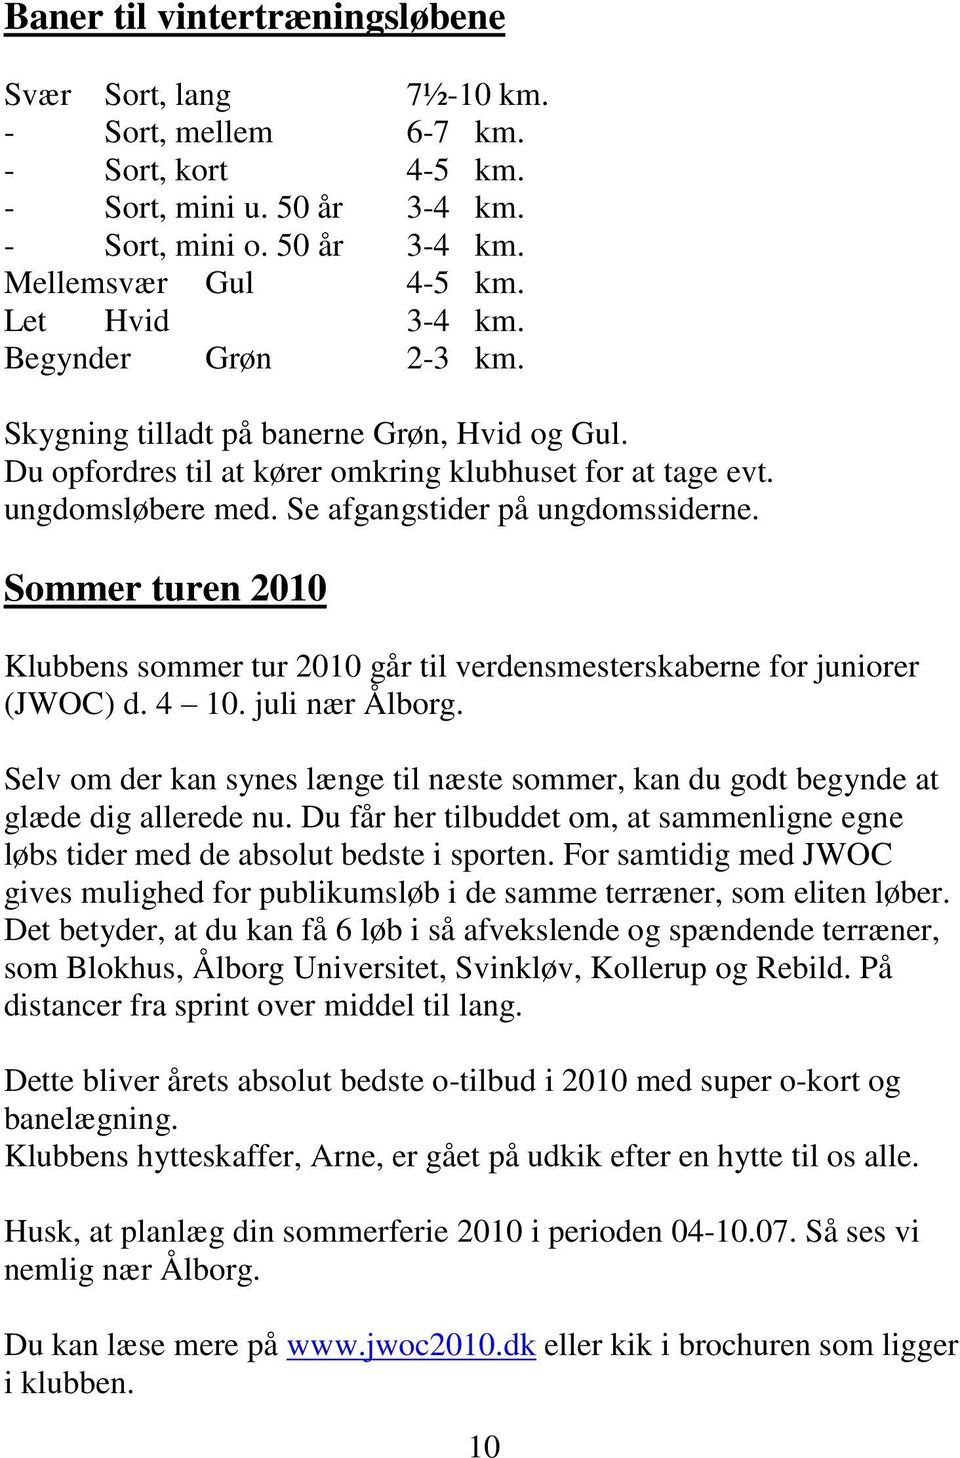 Sommer turen 2010 Klubbens sommer tur 2010 går til verdensmesterskaberne for juniorer (JWOC) d. 4 10. juli nær Ålborg.